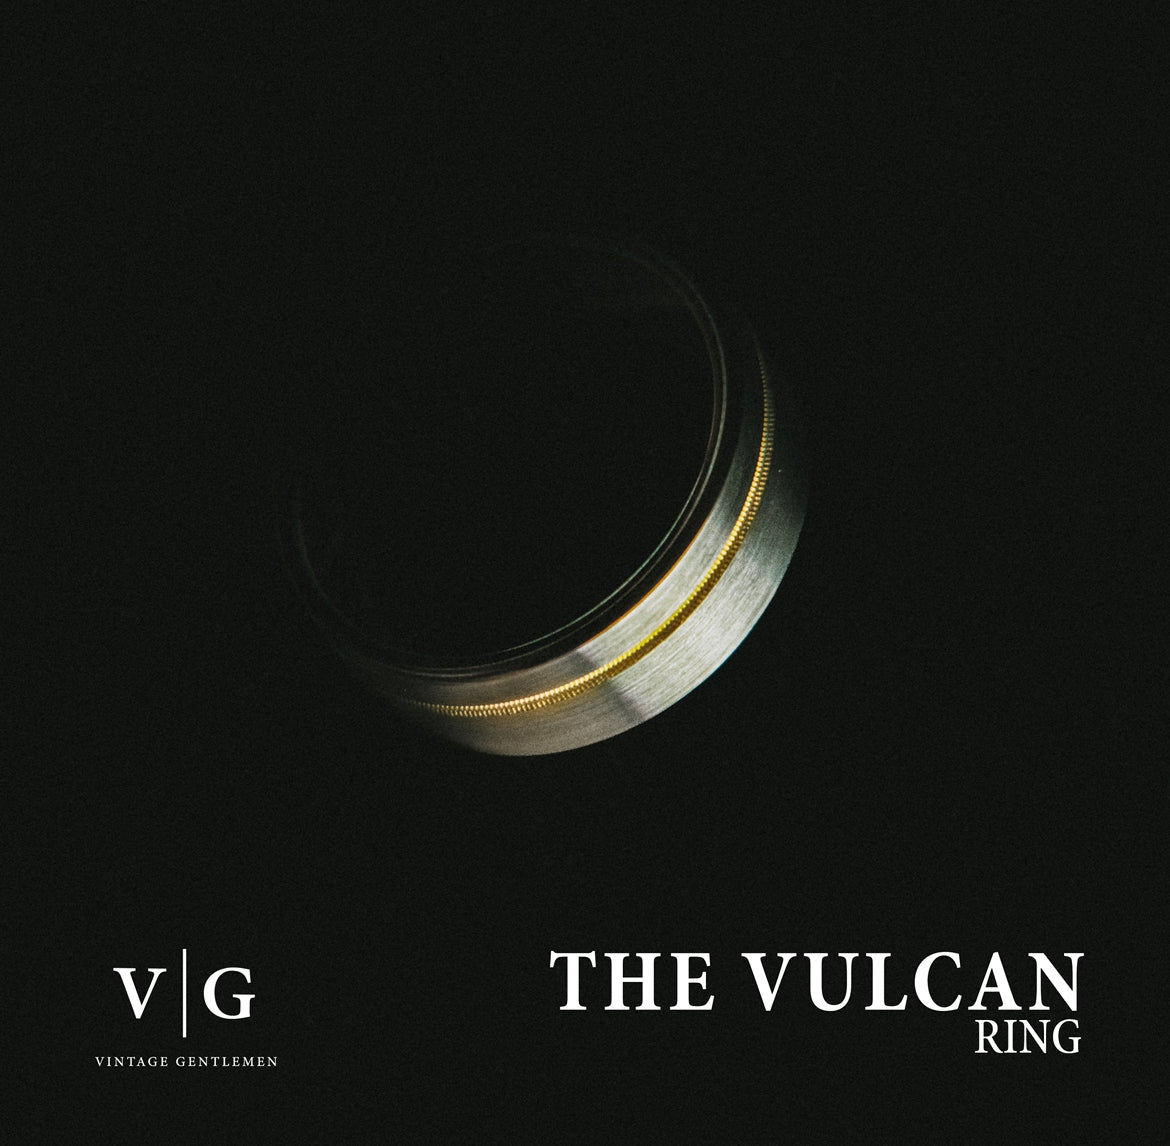 The “Vulcan” Ring